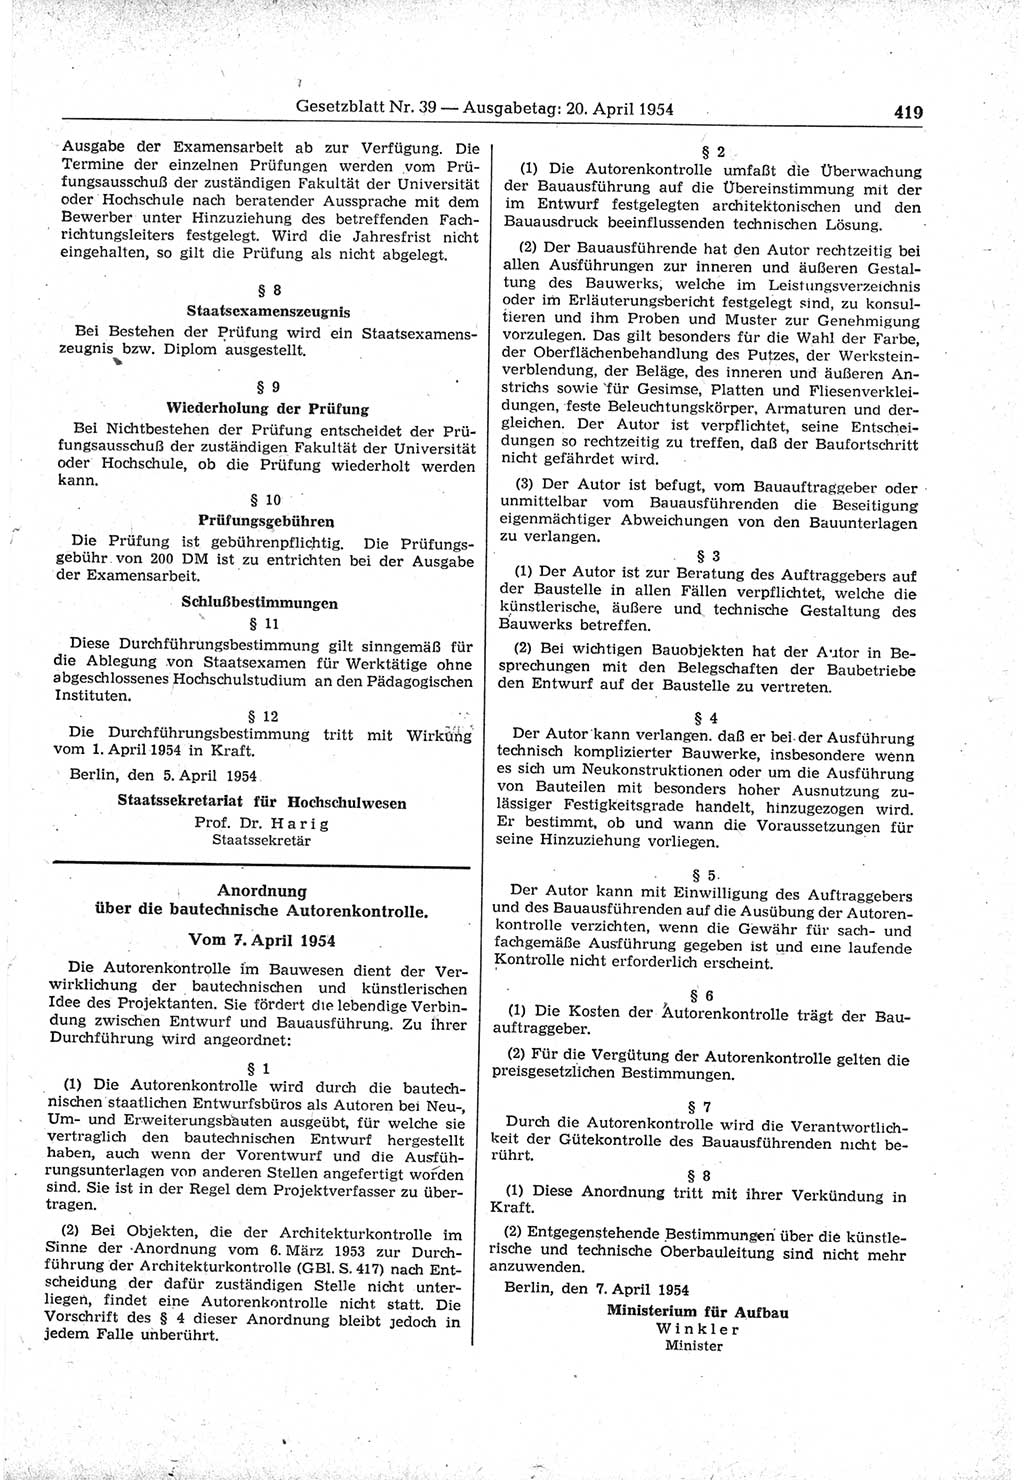 Gesetzblatt (GBl.) der Deutschen Demokratischen Republik (DDR) 1954, Seite 419 (GBl. DDR 1954, S. 419)